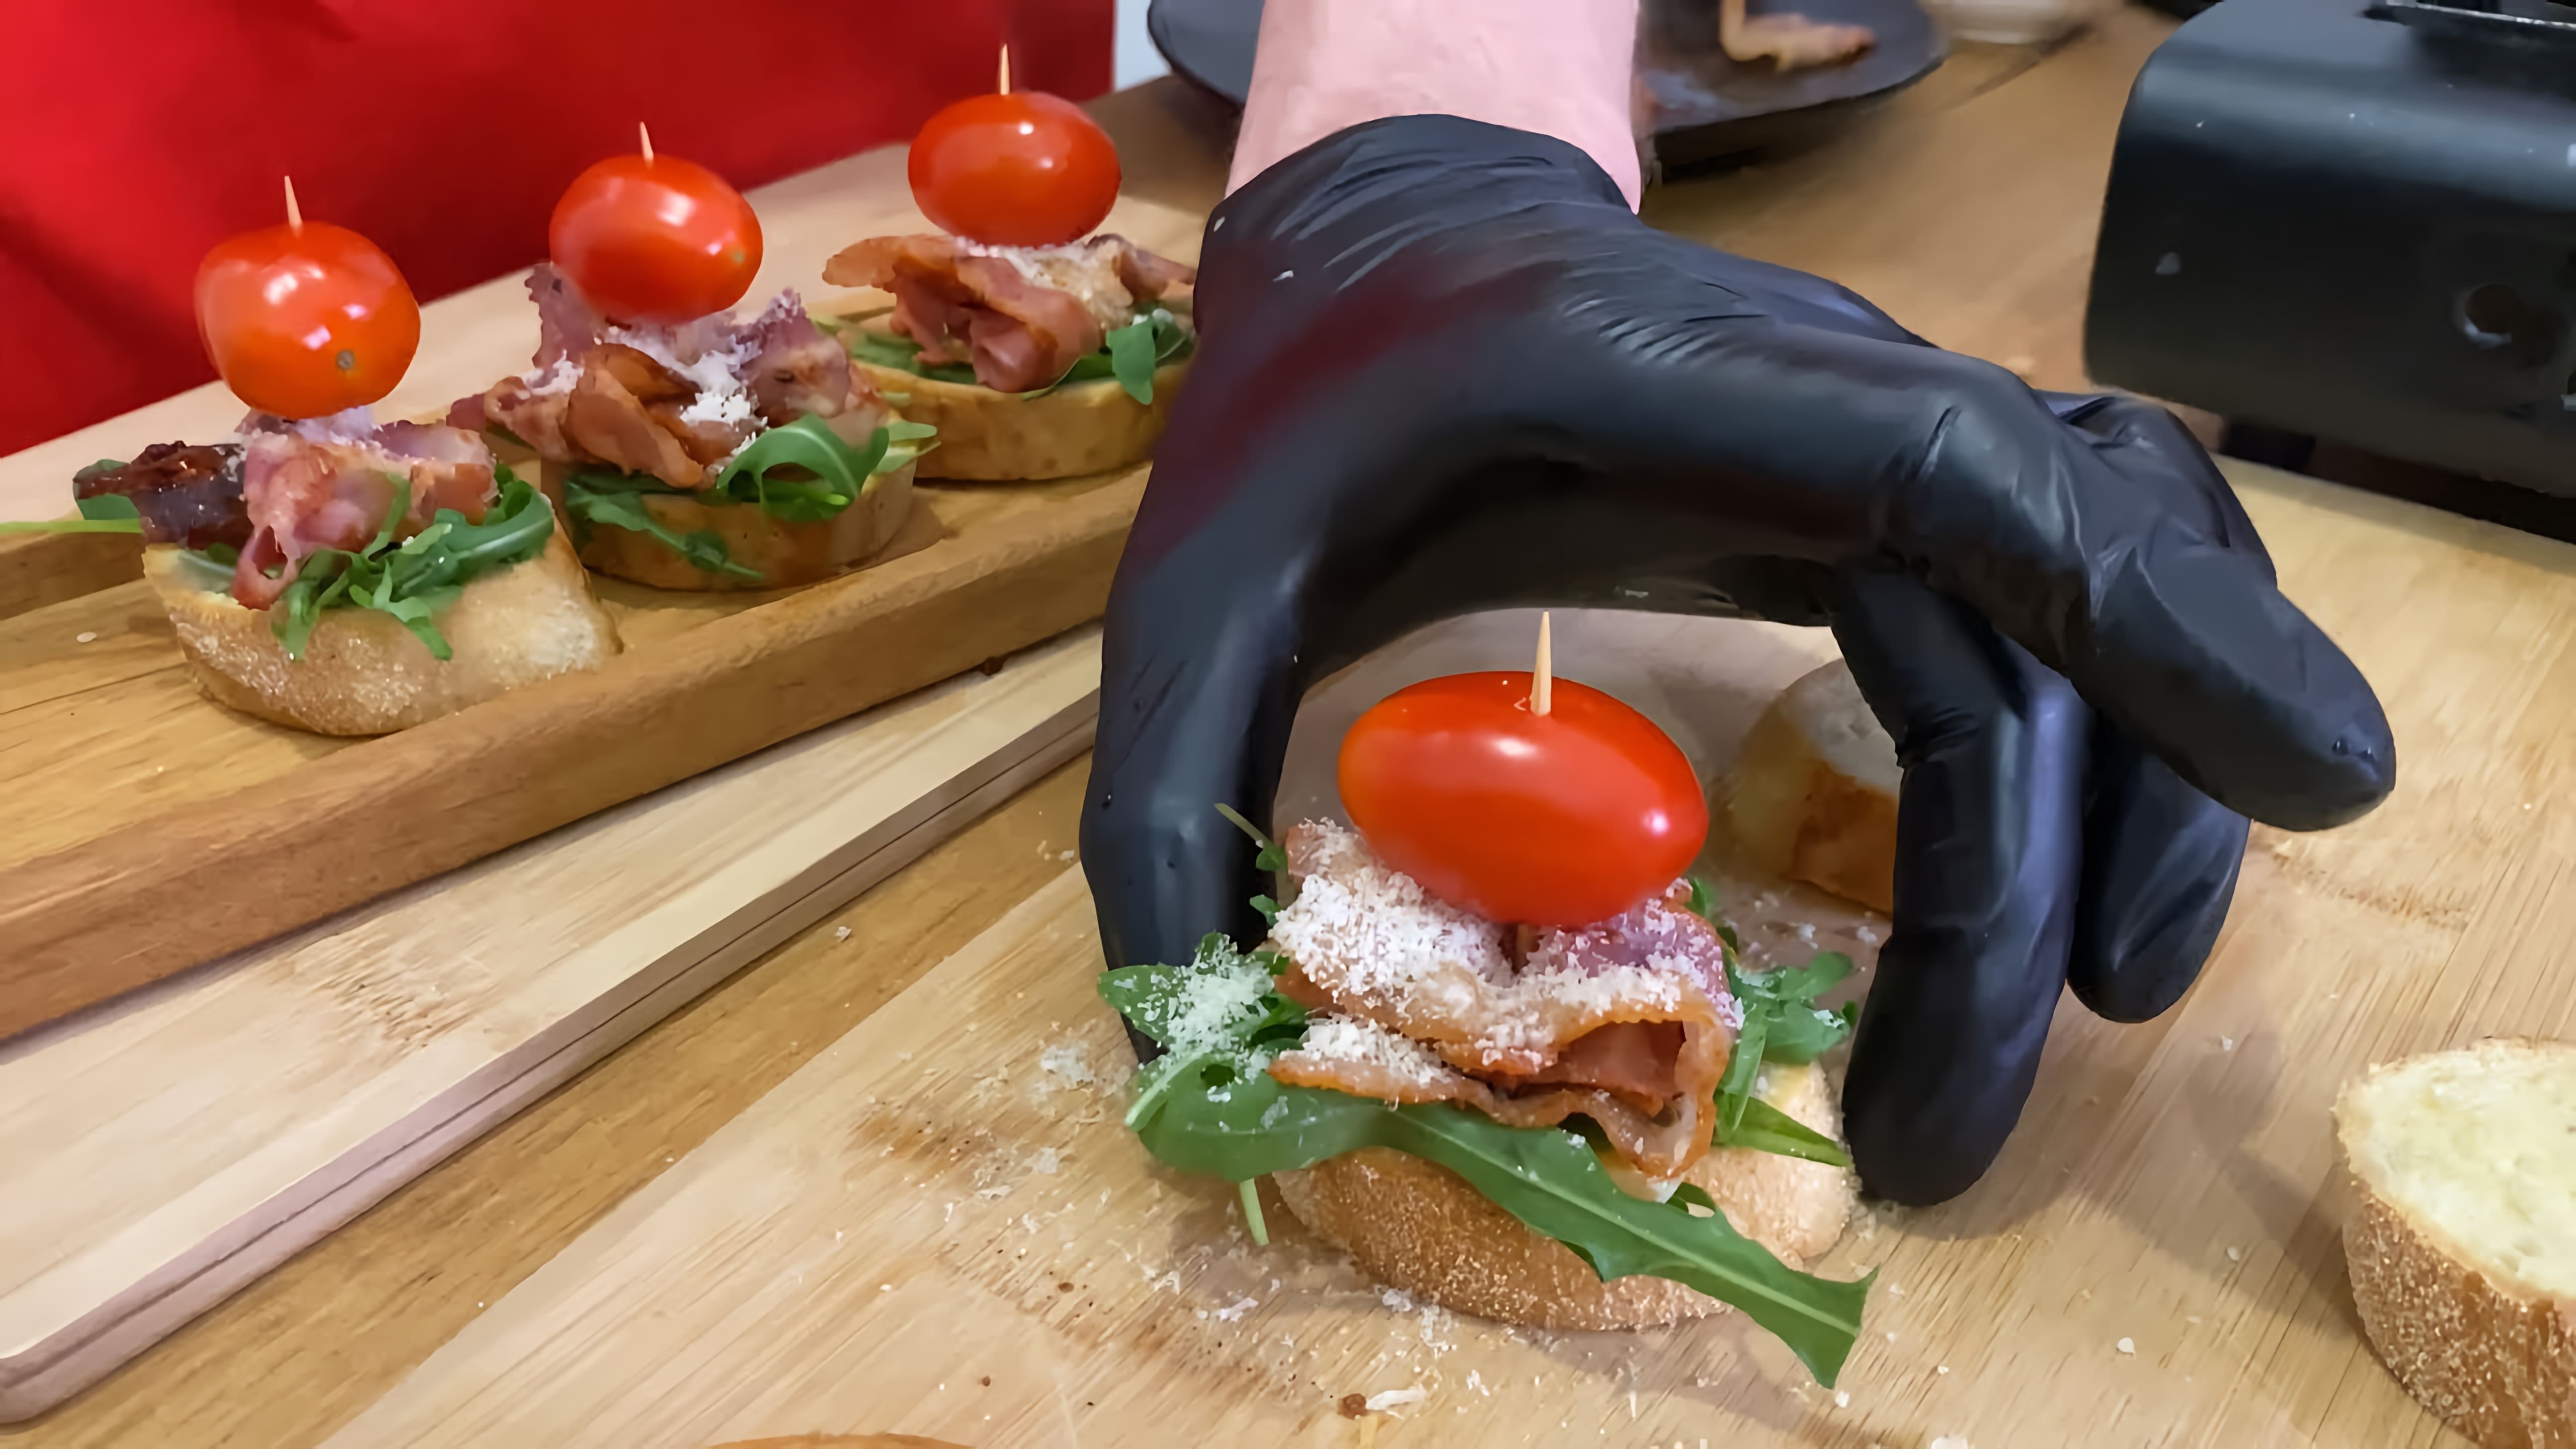 В этом видео демонстрируется процесс приготовления брускетт - итальянской закуски из поджаренного багета с различными начинками